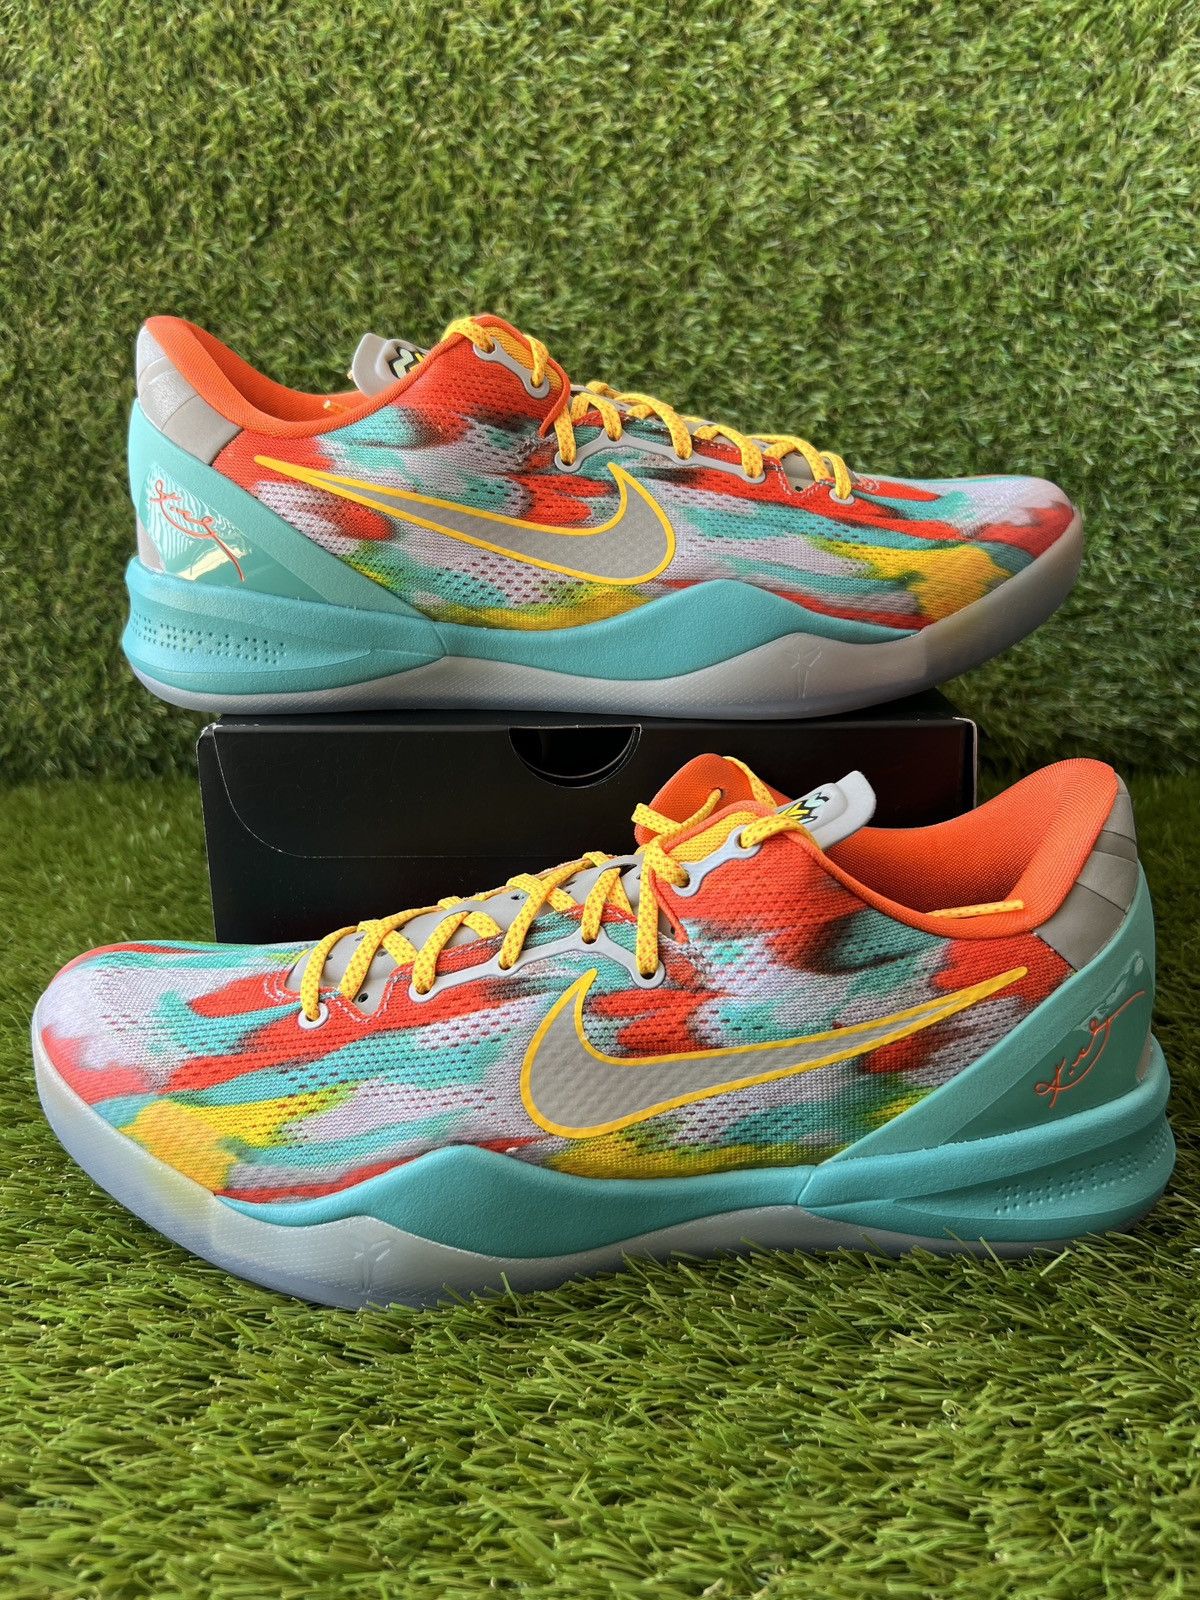 Pre-owned Kobe Mentality X Nike Kobe 8 Protro Venice Beach Shoes In Multicolor